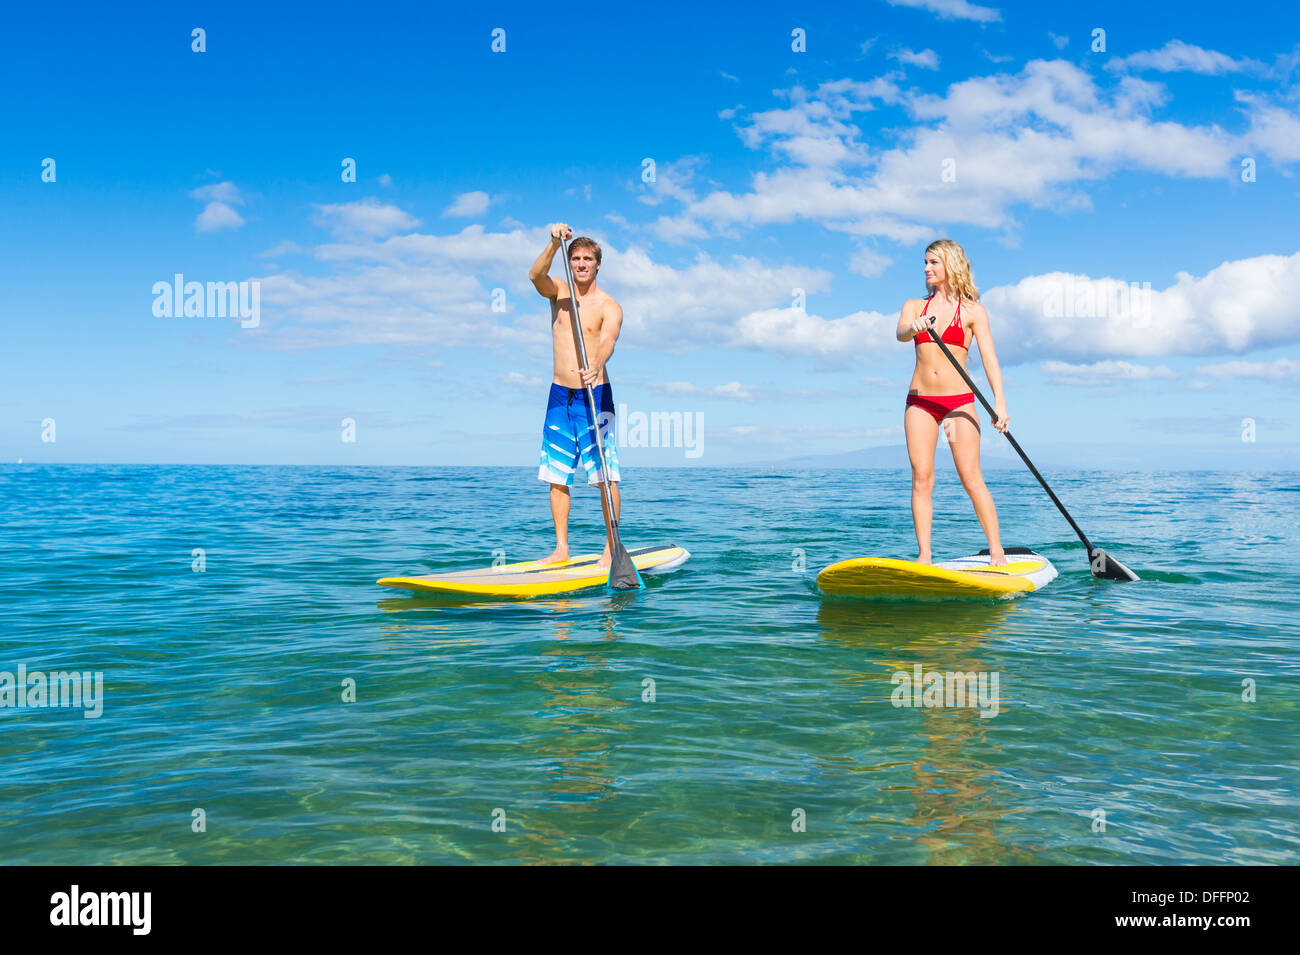 Paar Stand Up Paddle Surfen In Hawaii, schönen tropischen Ozean aktiv Strand Lebensstil Stockfoto